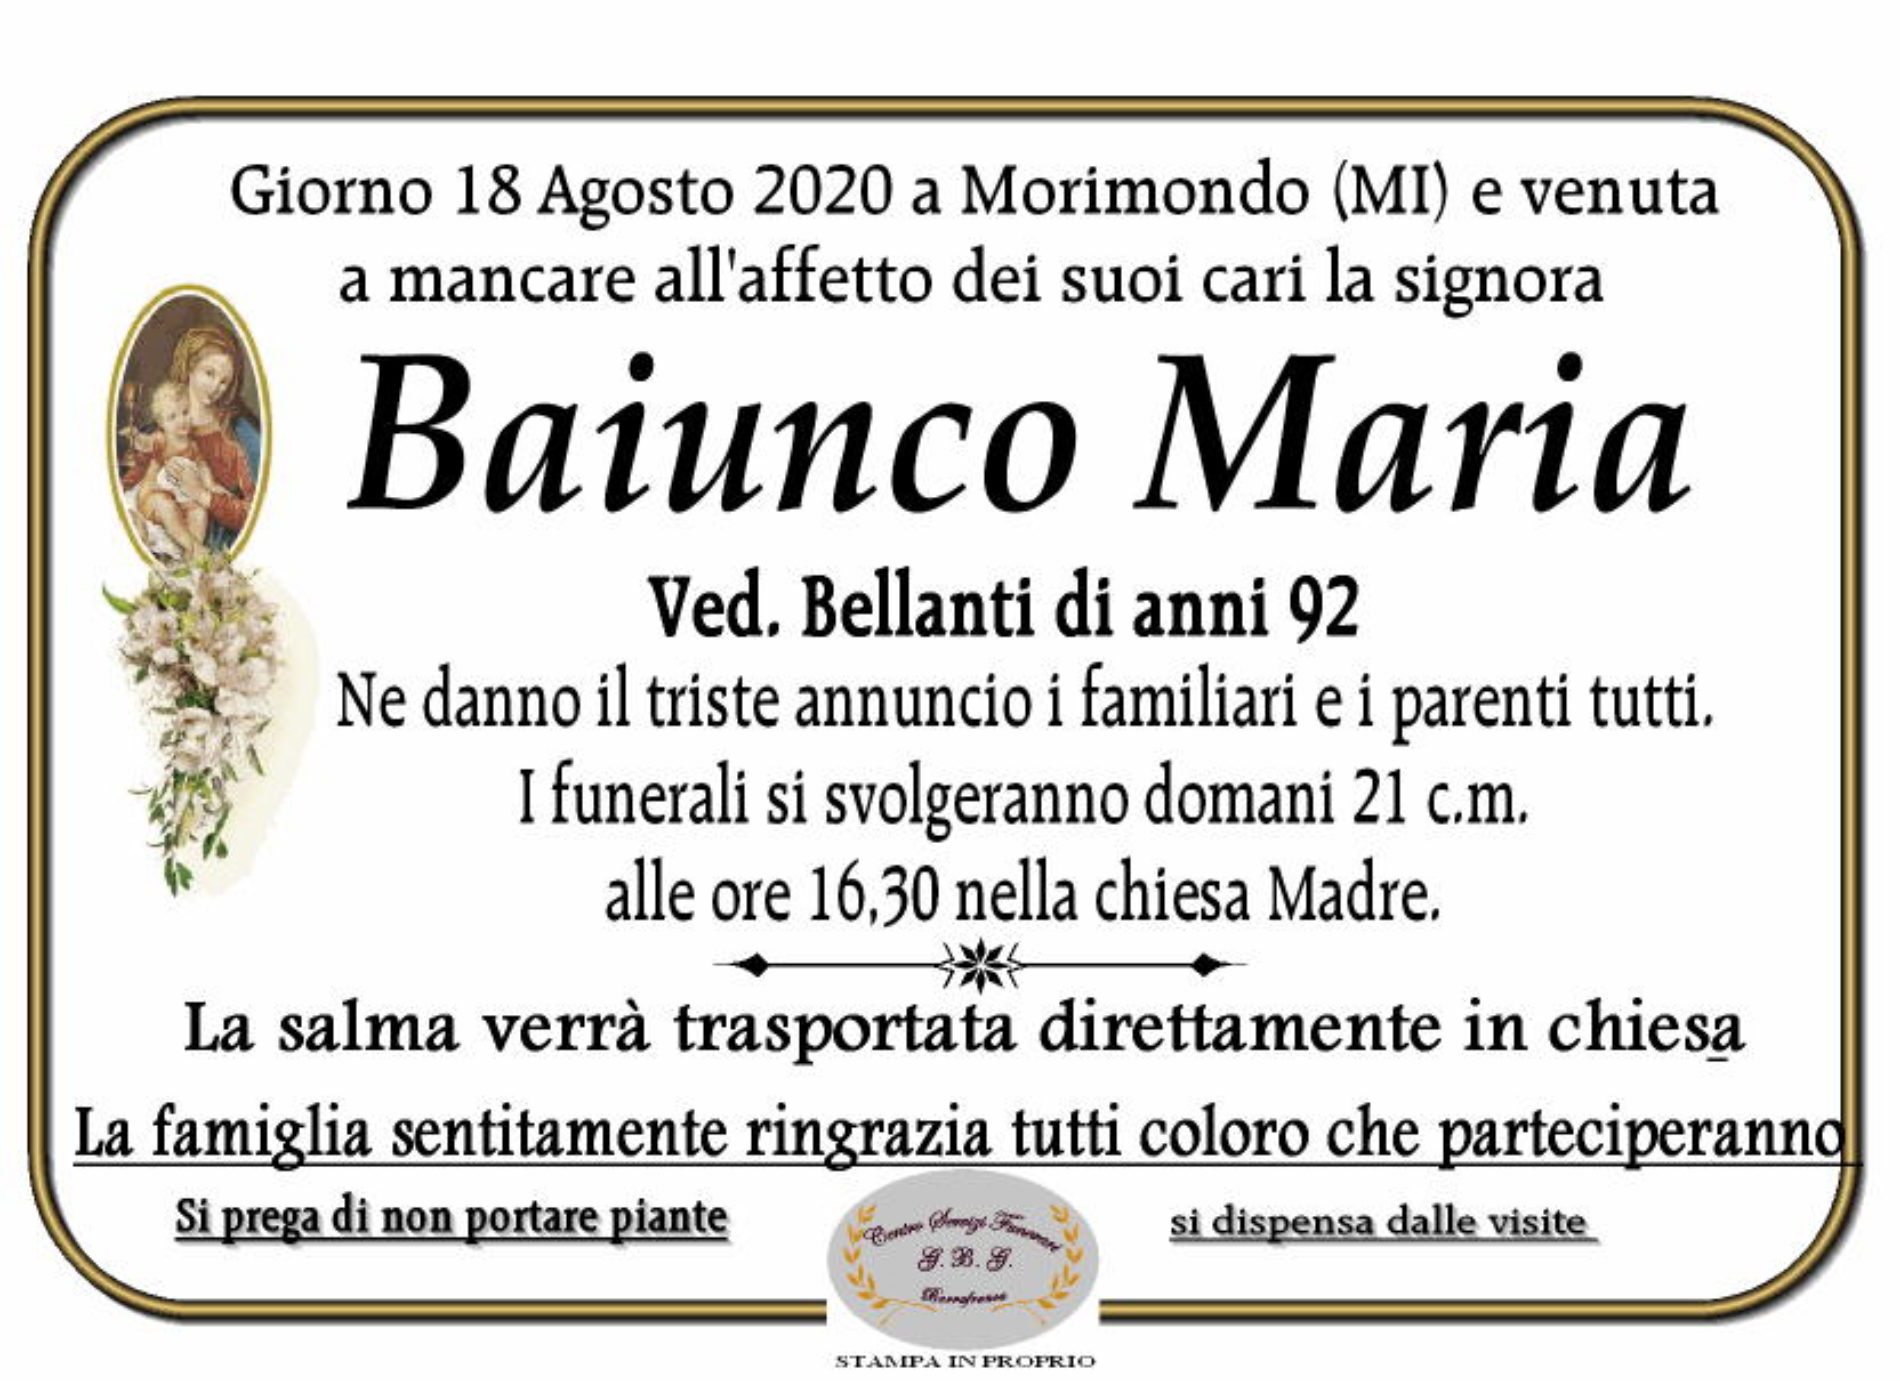 Annuncio Centro servizi funerari G.B.G Baiunco Maria ved Bellanti anni 93